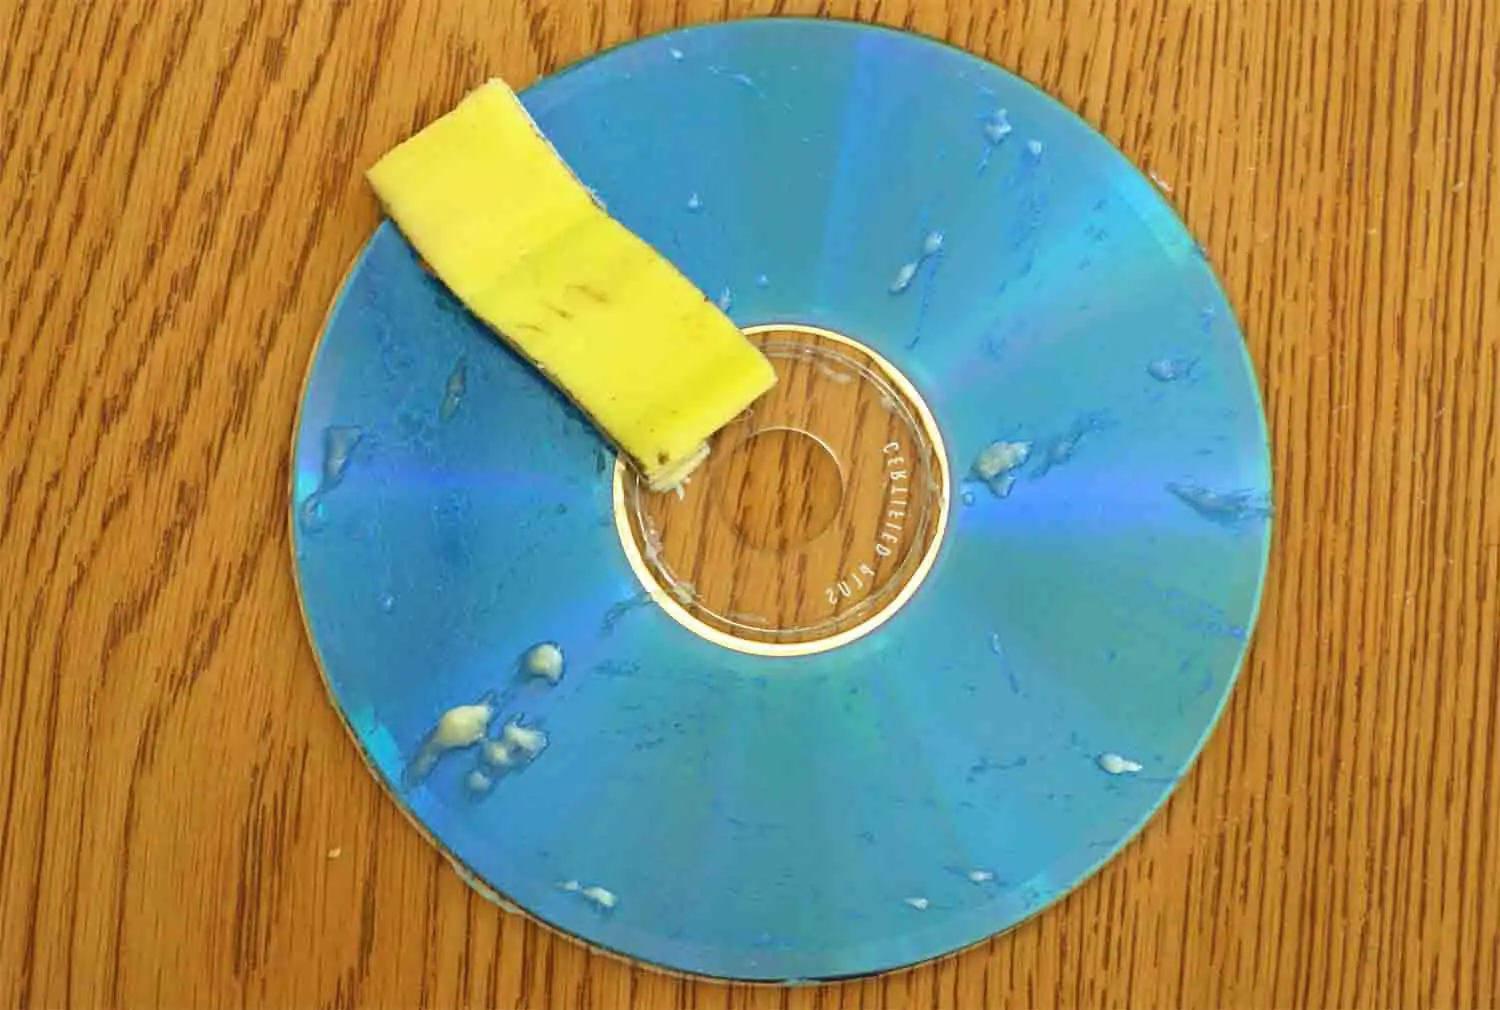 Consertando CD Riscado - Casca de Banana